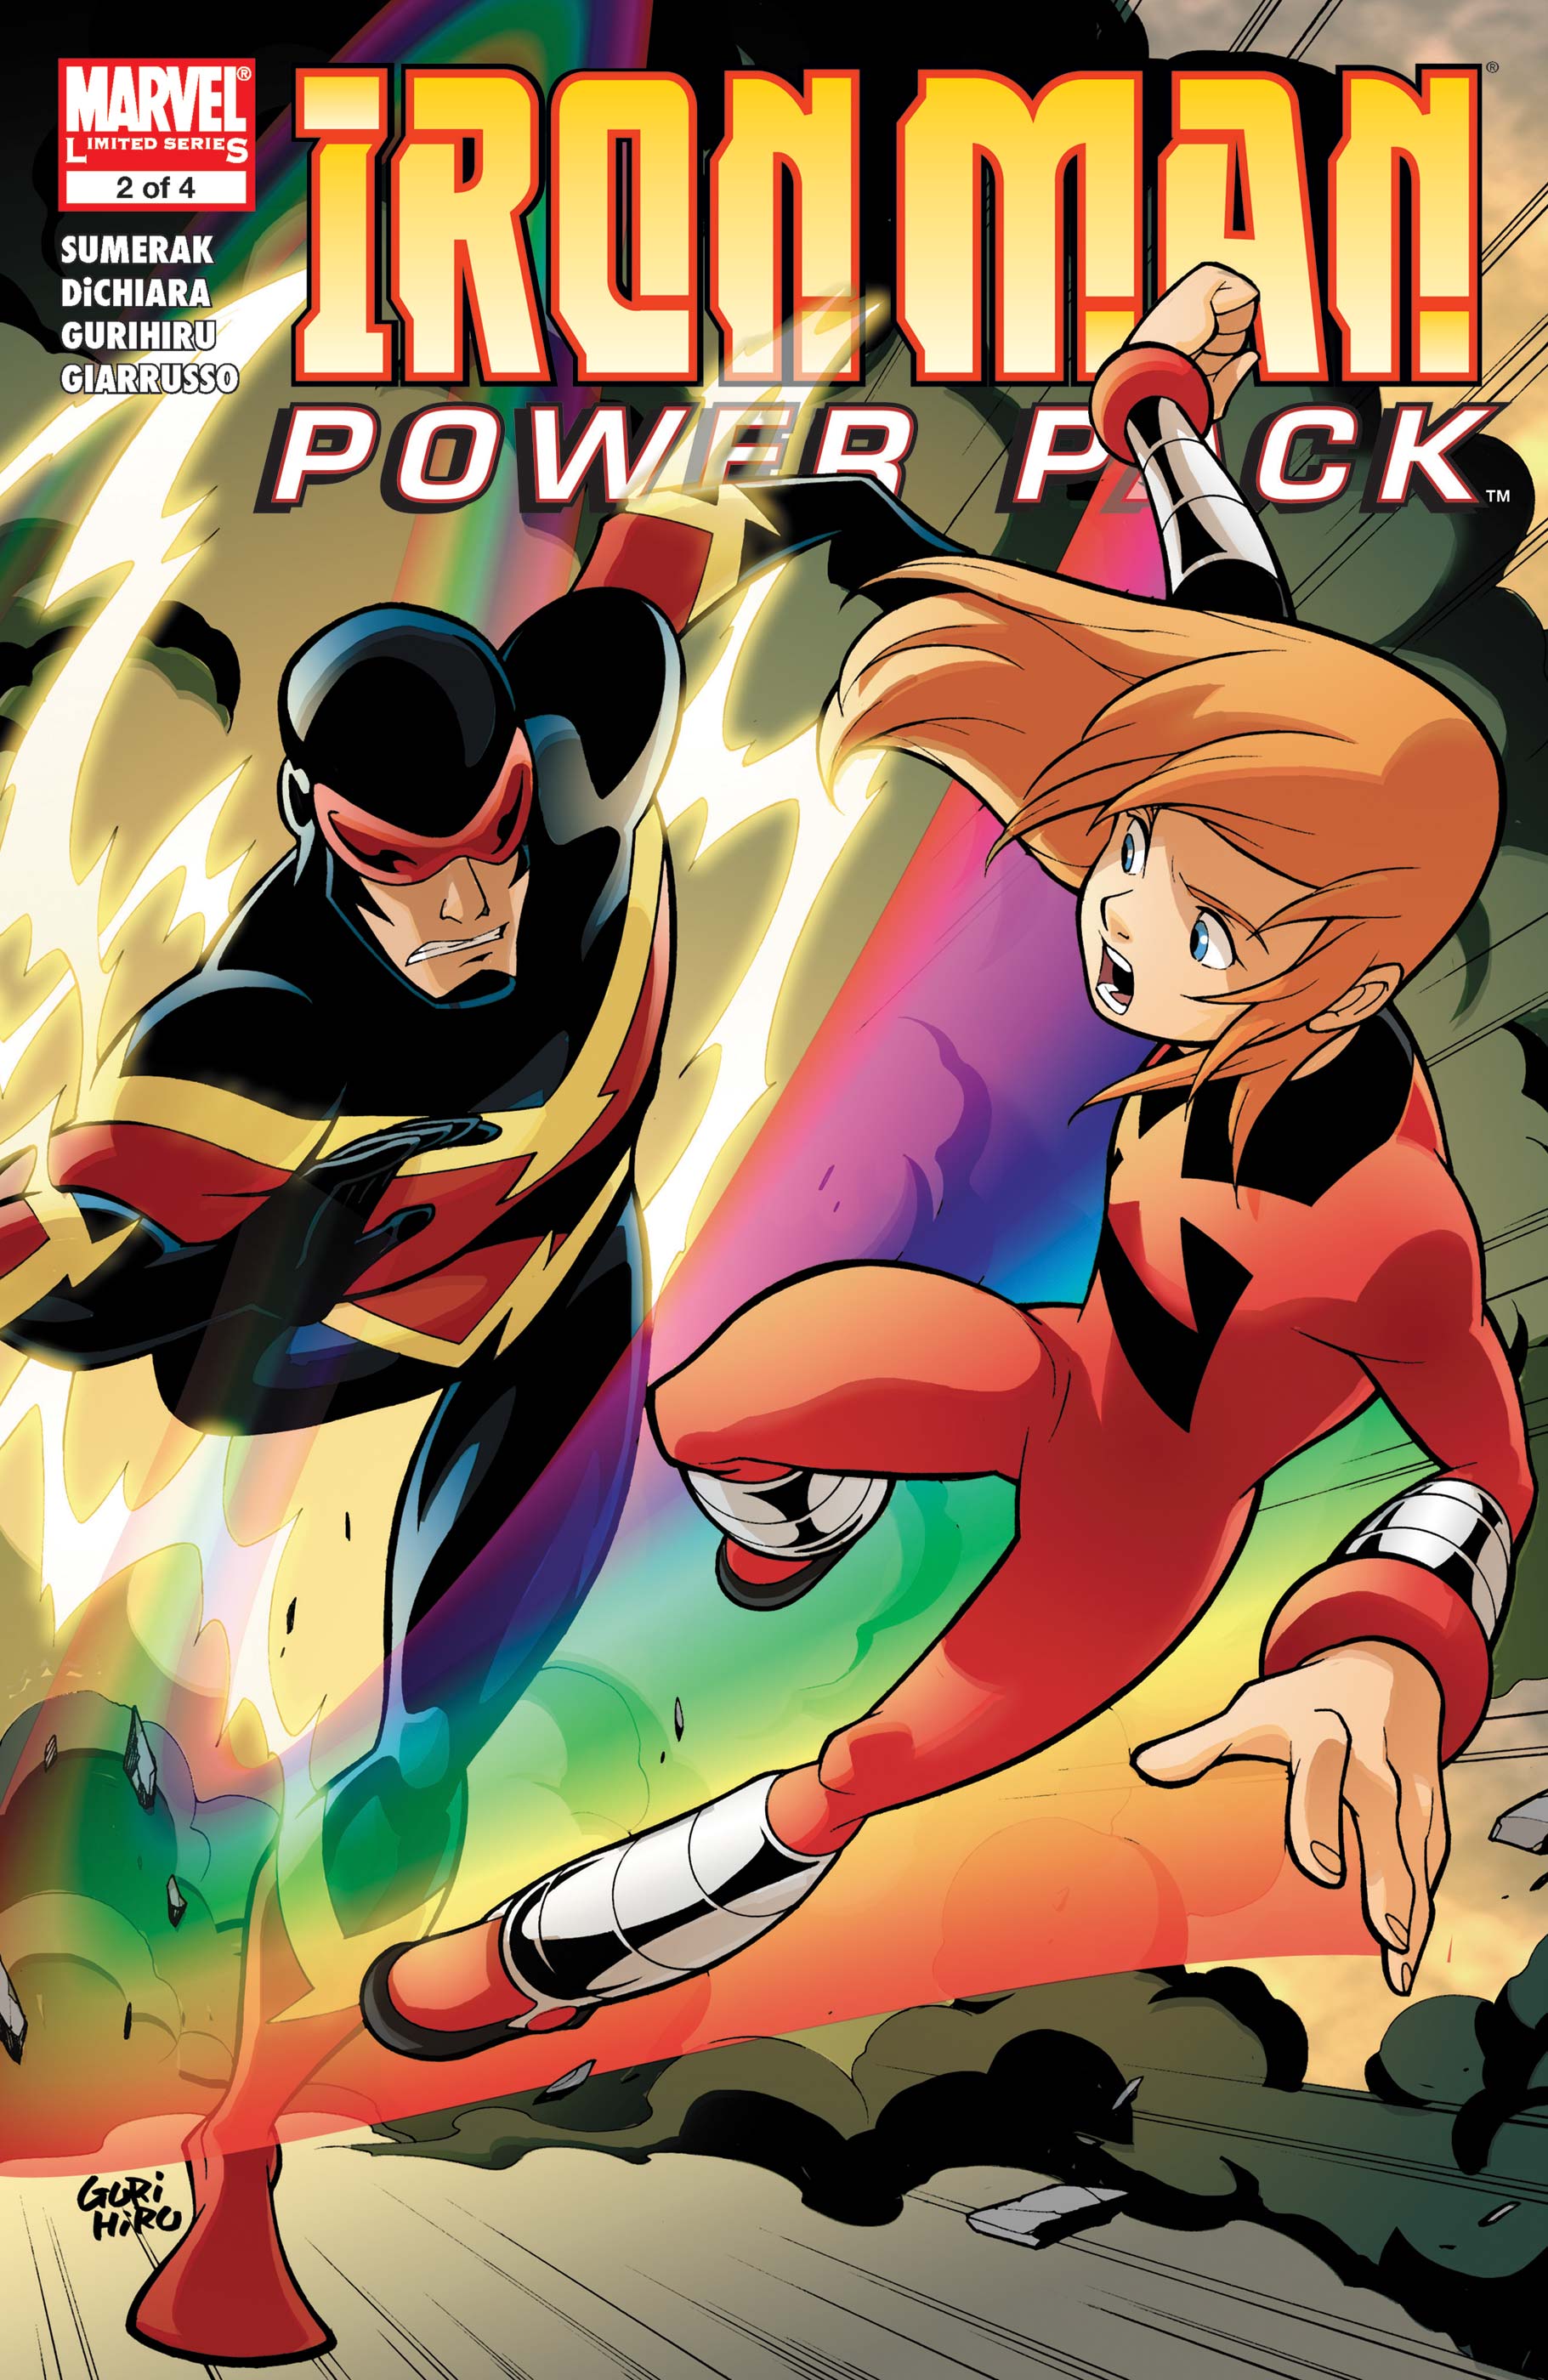 Power packing комиксы. Джули Пауэр Марвел. POWERPACK комиксы. Lightspeed Marvel. Блок питания комиксы.